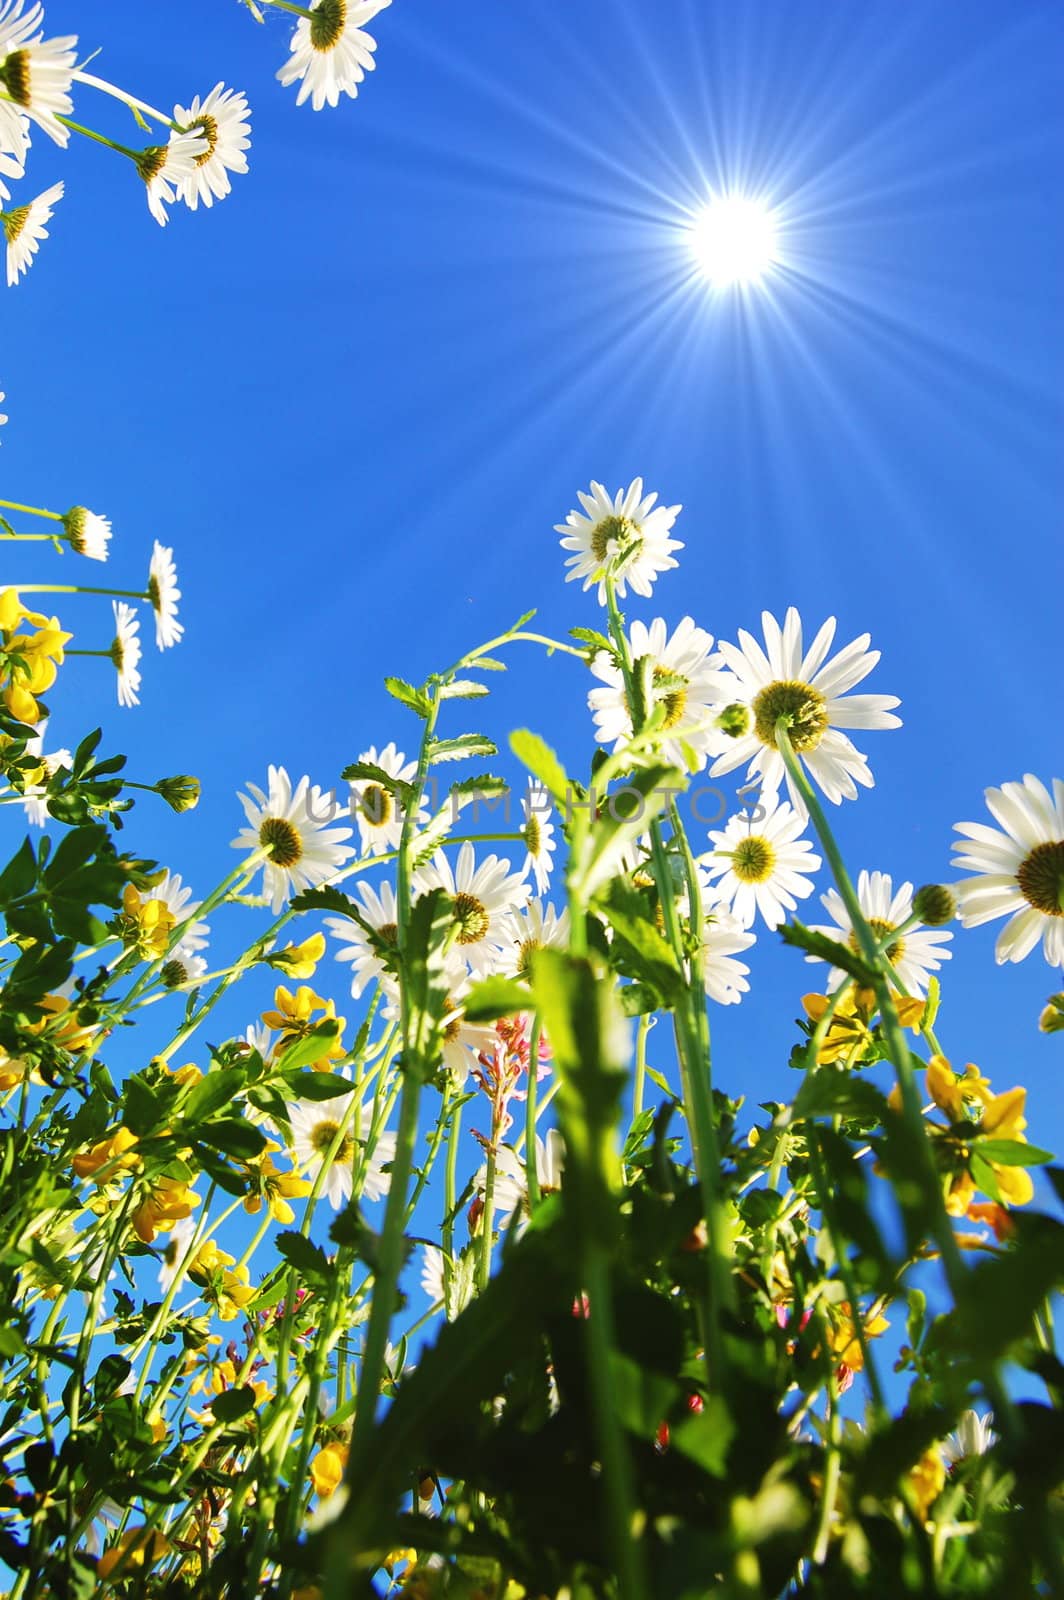 daisy flowers in summer under blue sky from below